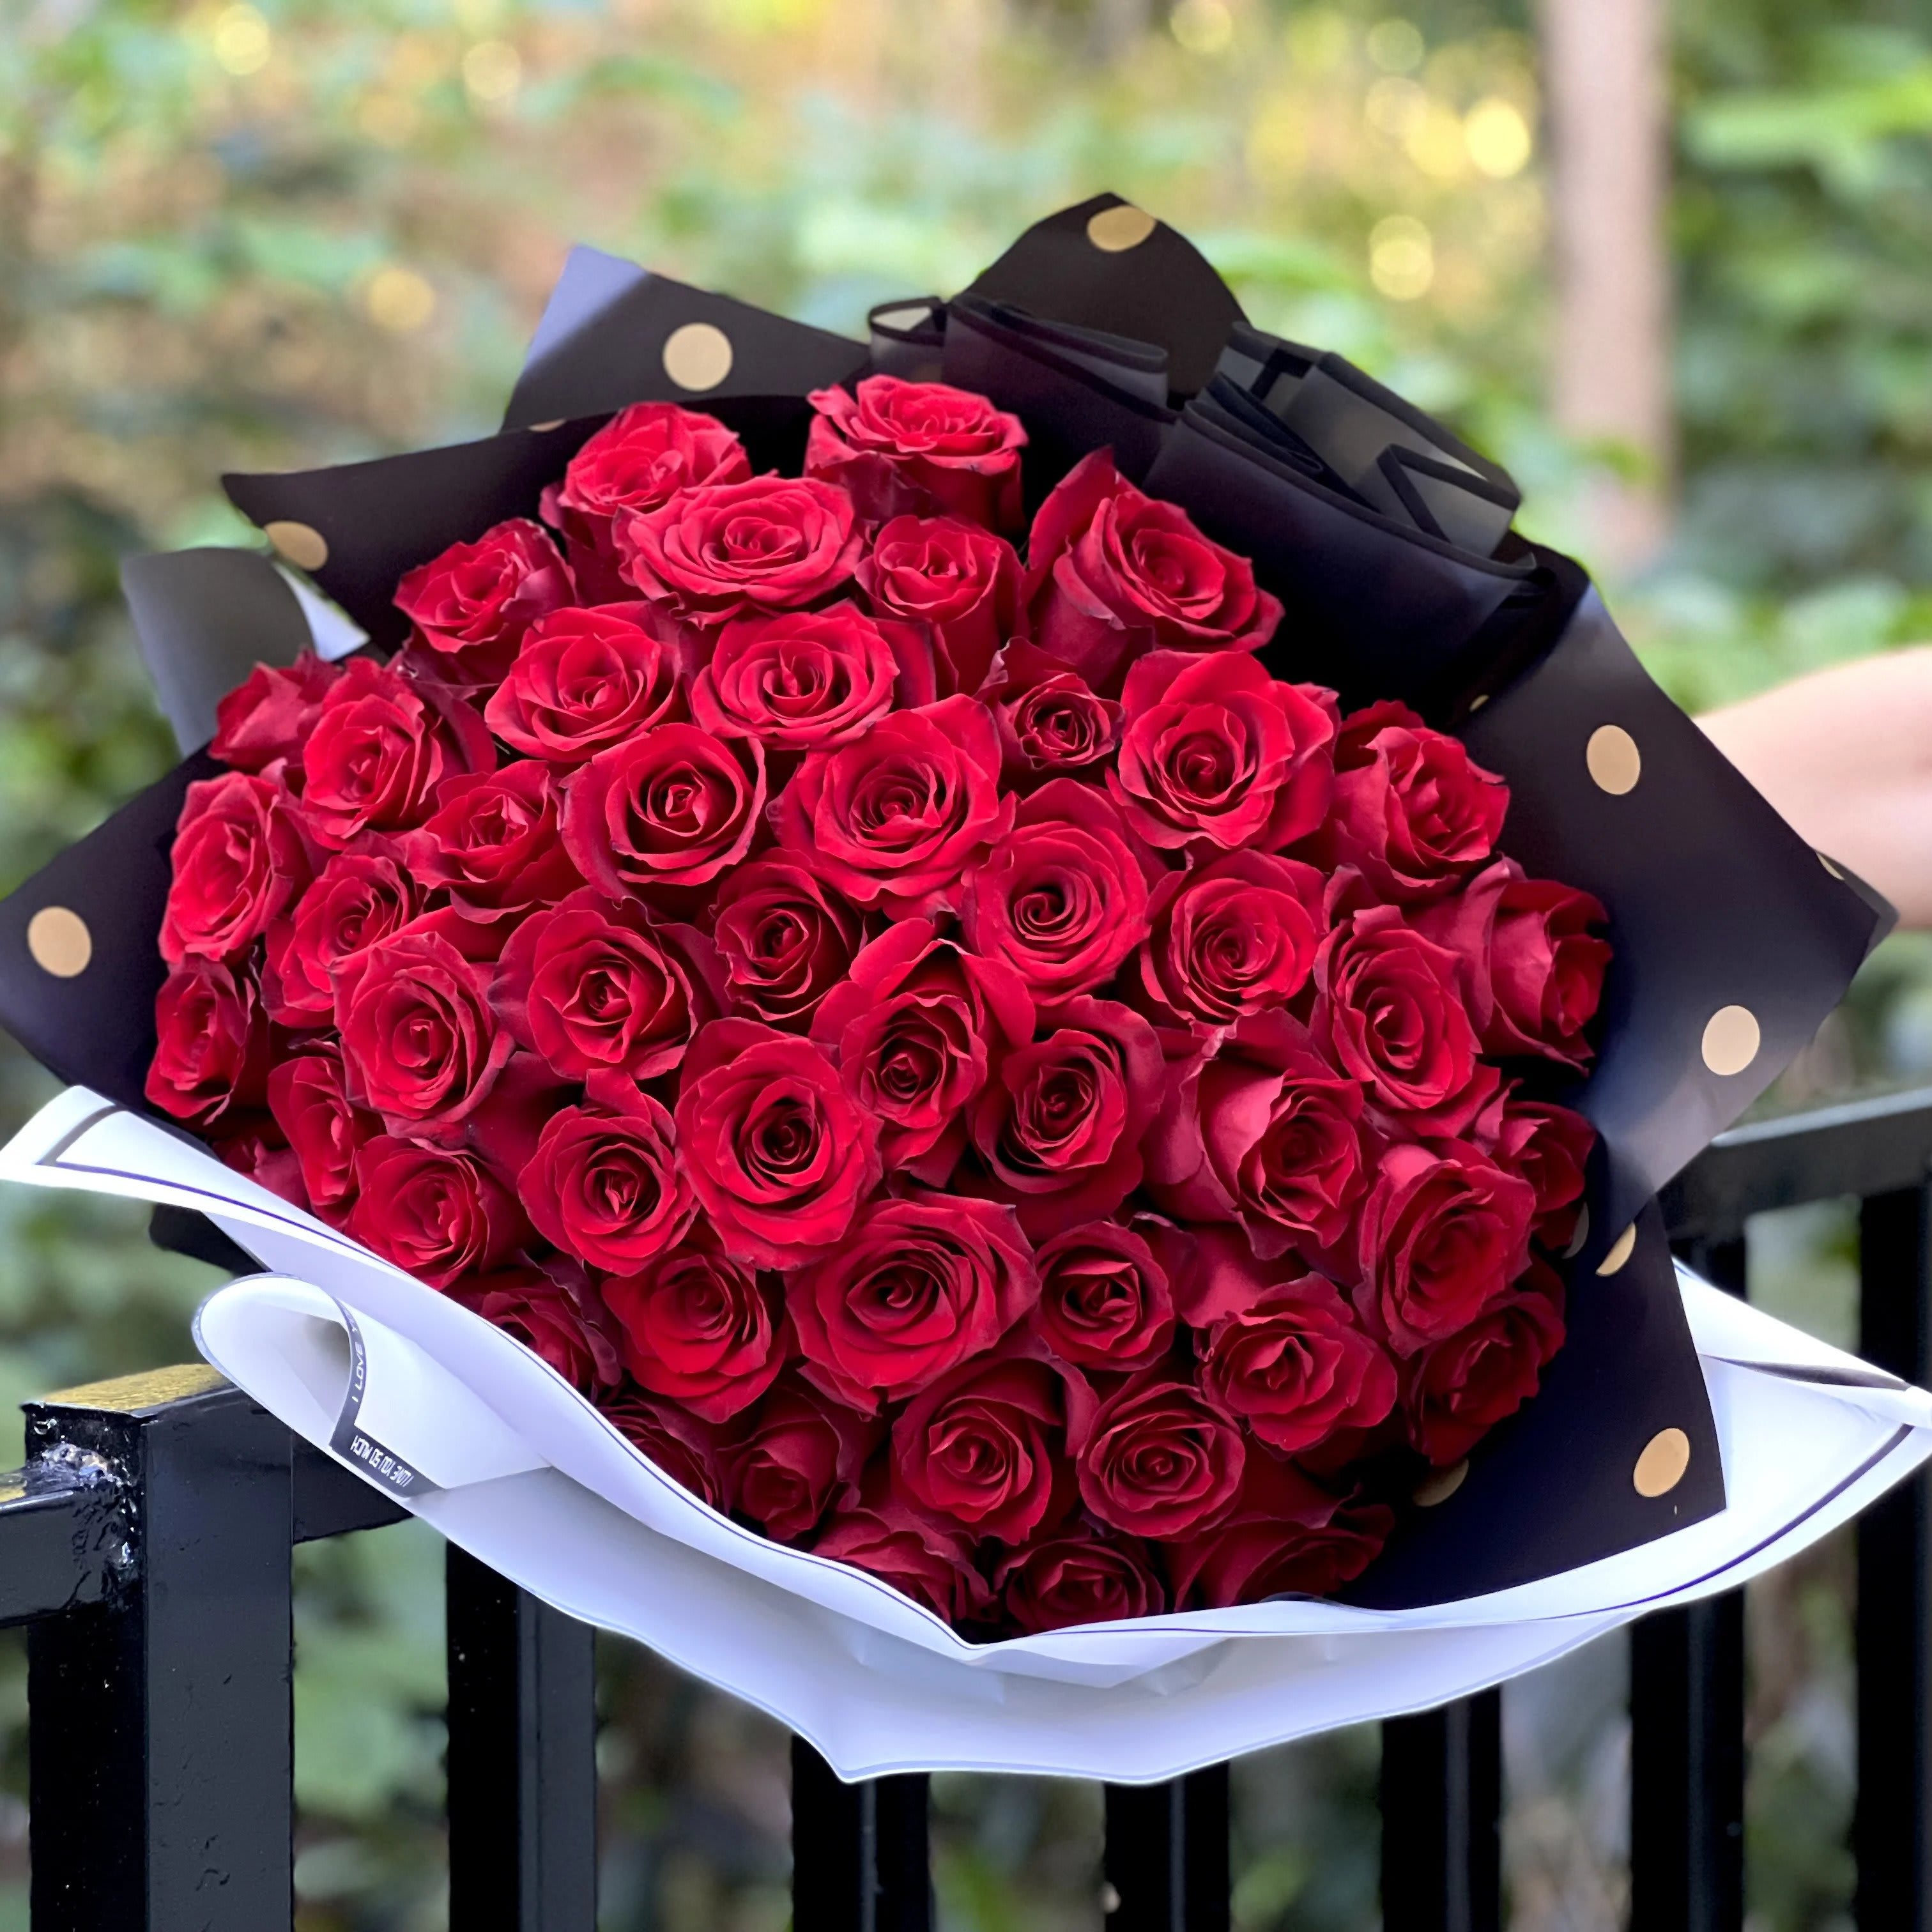 Ribbon Rose Bouquet 